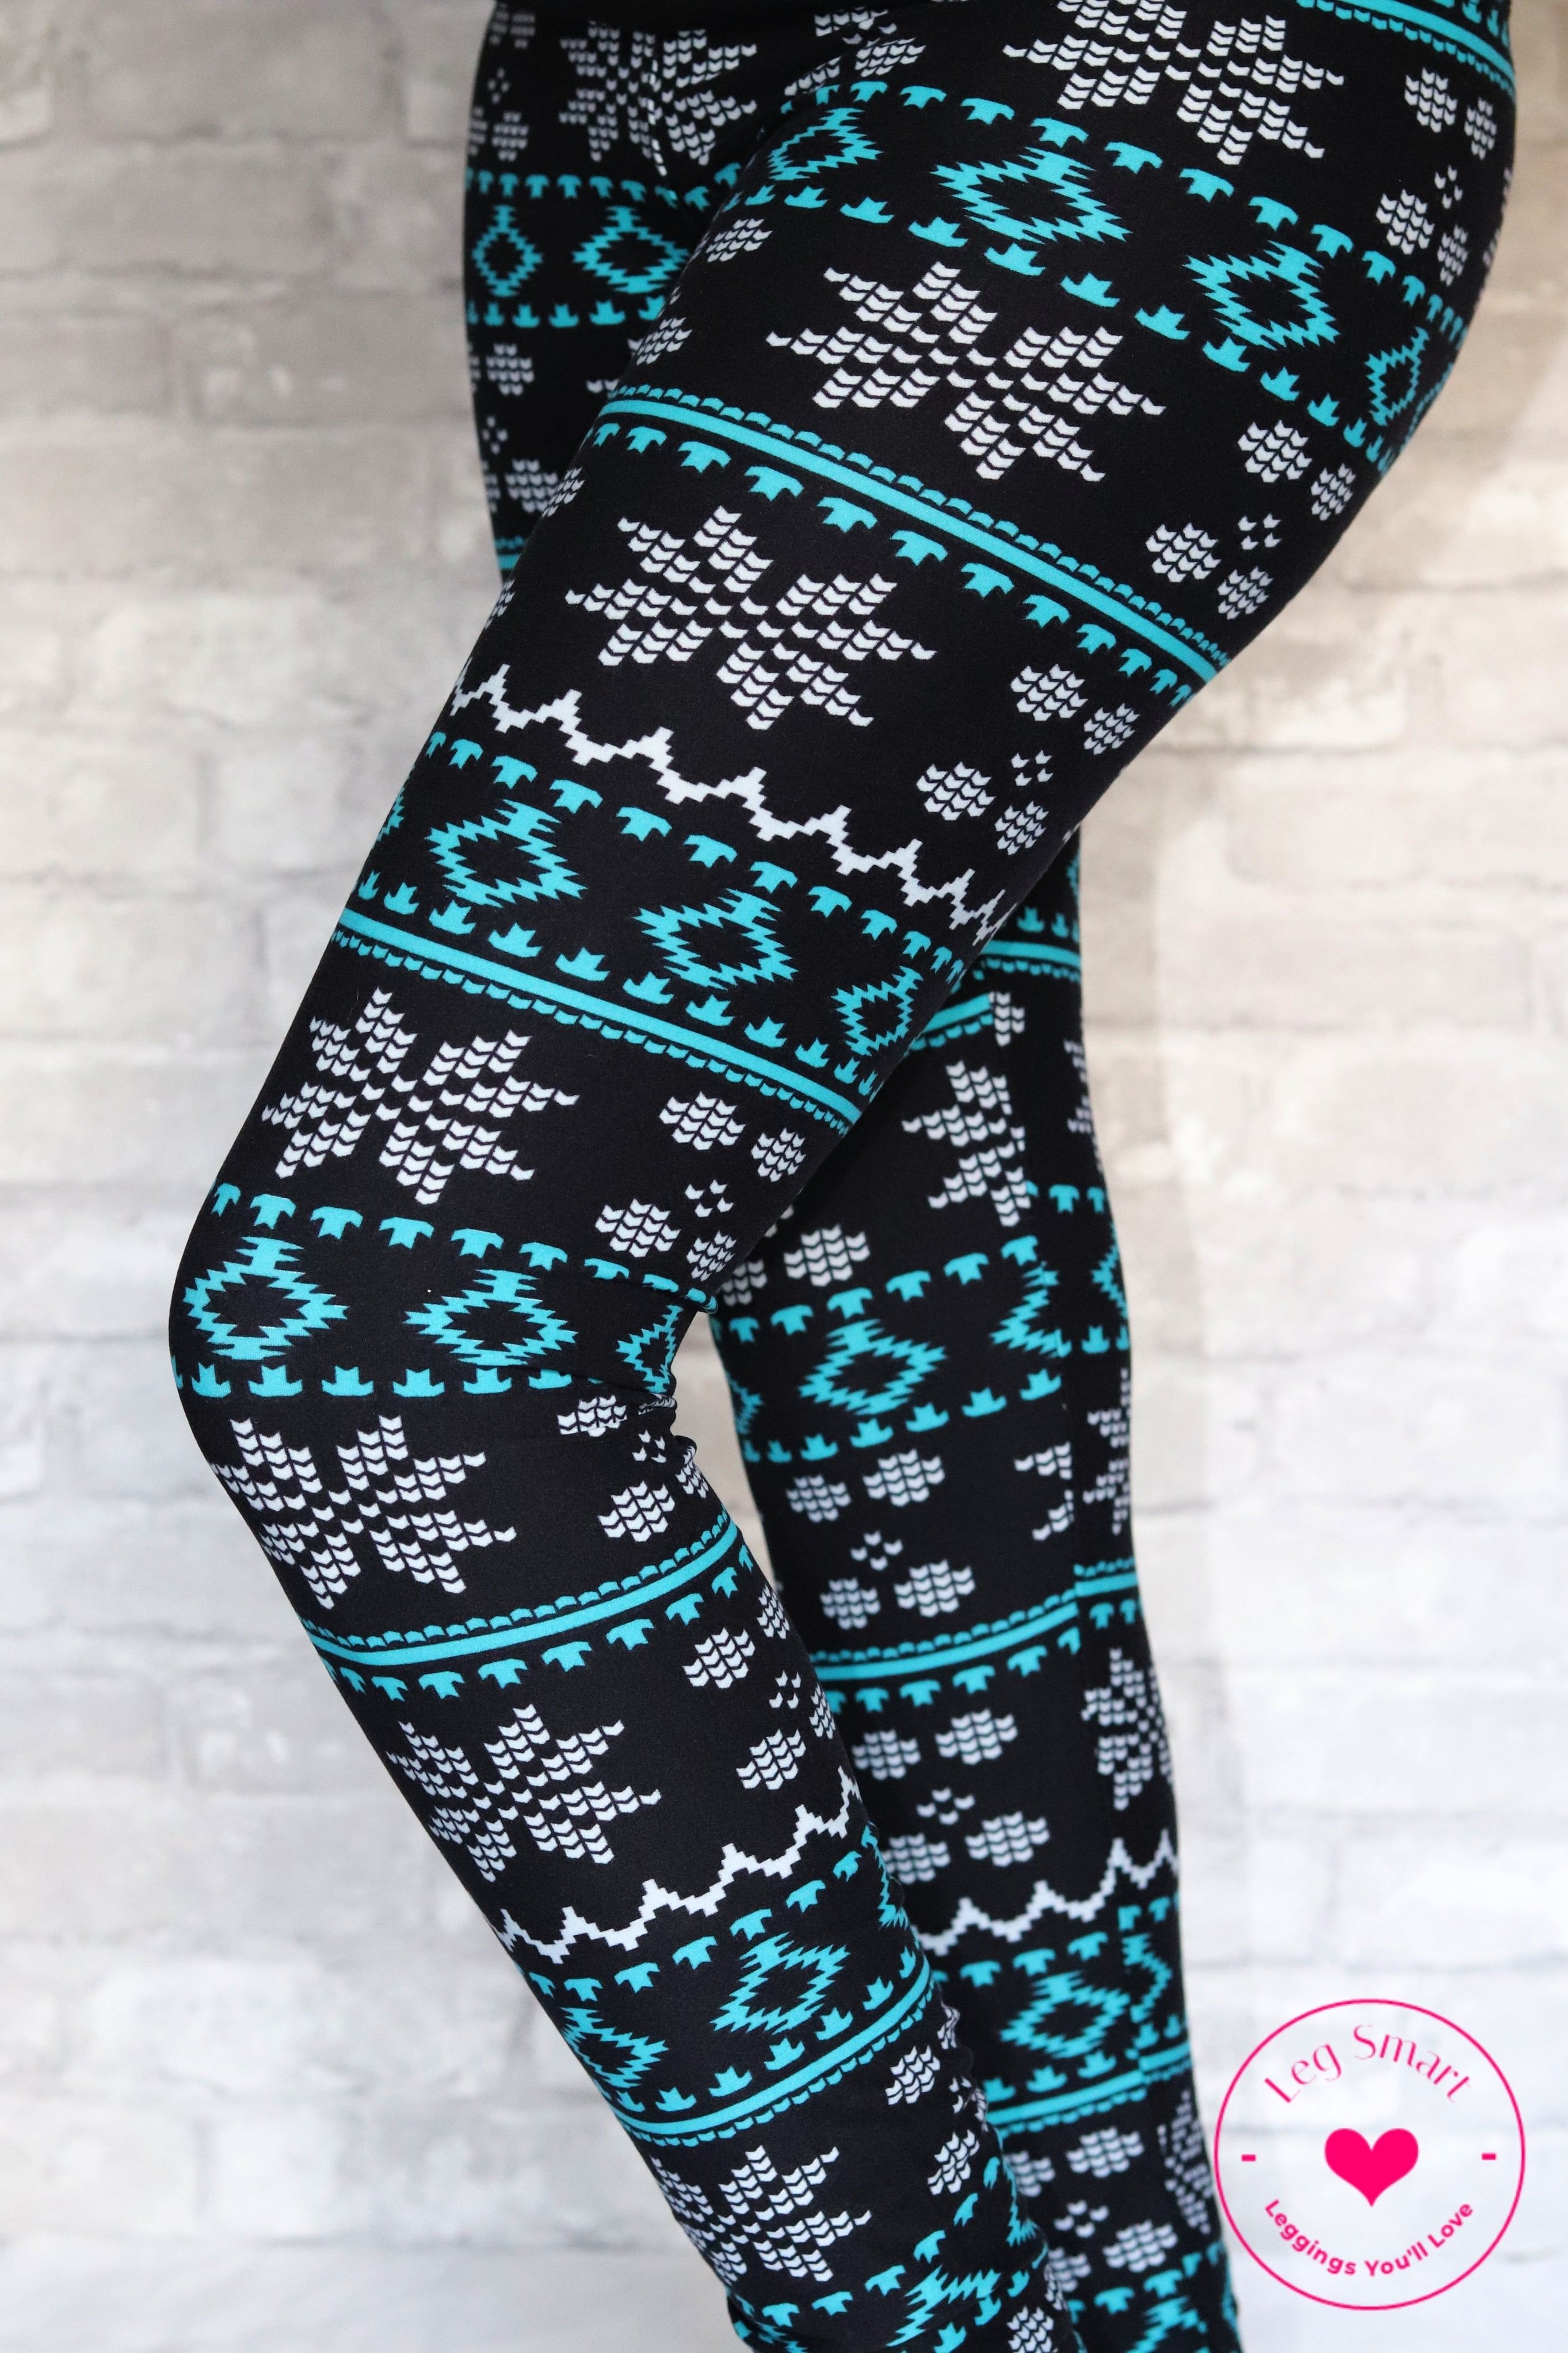  sdbrld Fashion Leggings for Women Christmas Leggings